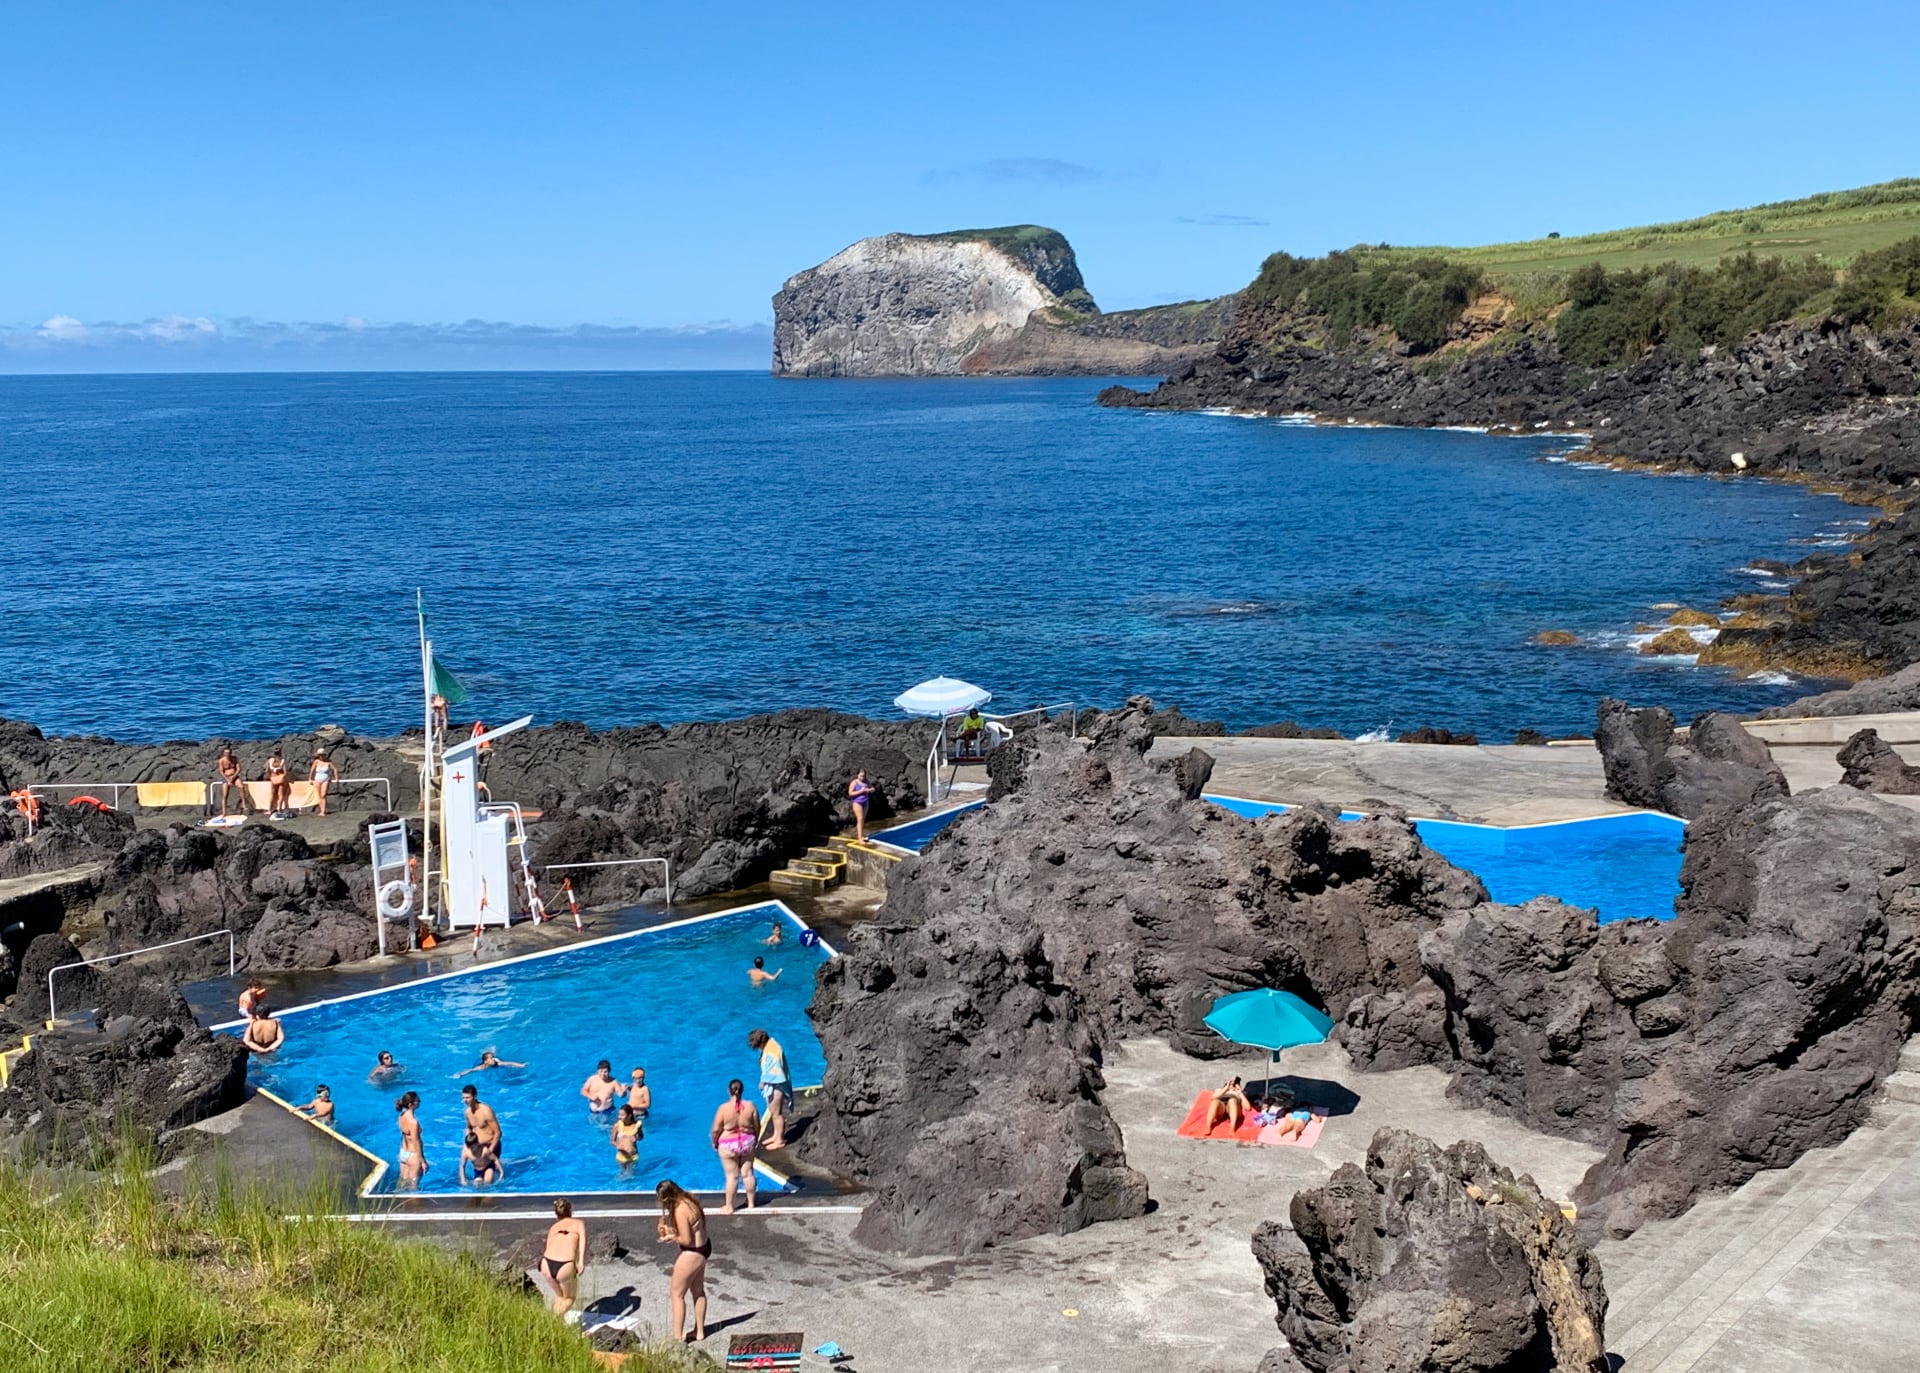 Piscinas em Castelo Branco - Faial - Açores